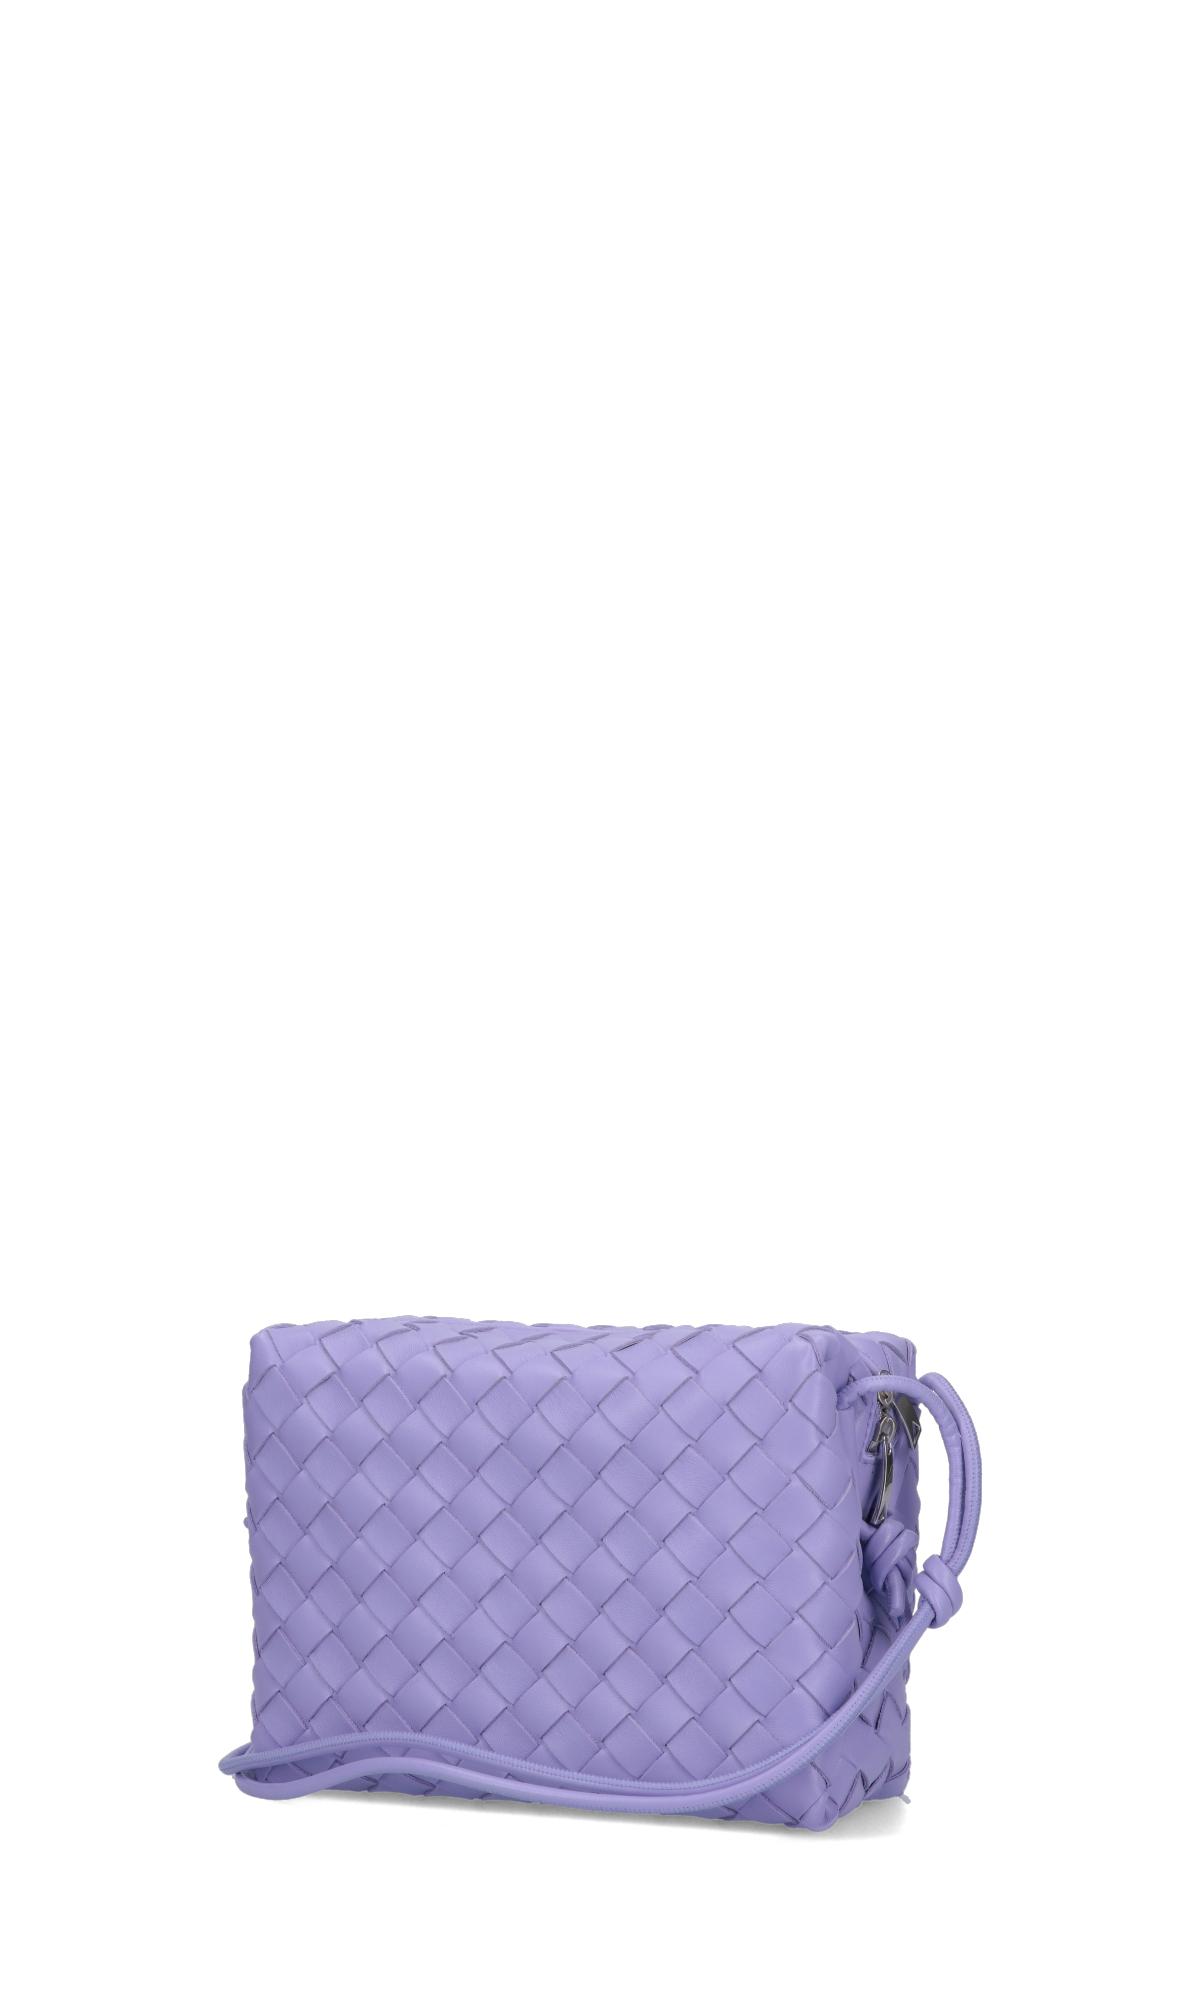 Bottega Veneta Small Loop Shoulder Bag in Purple